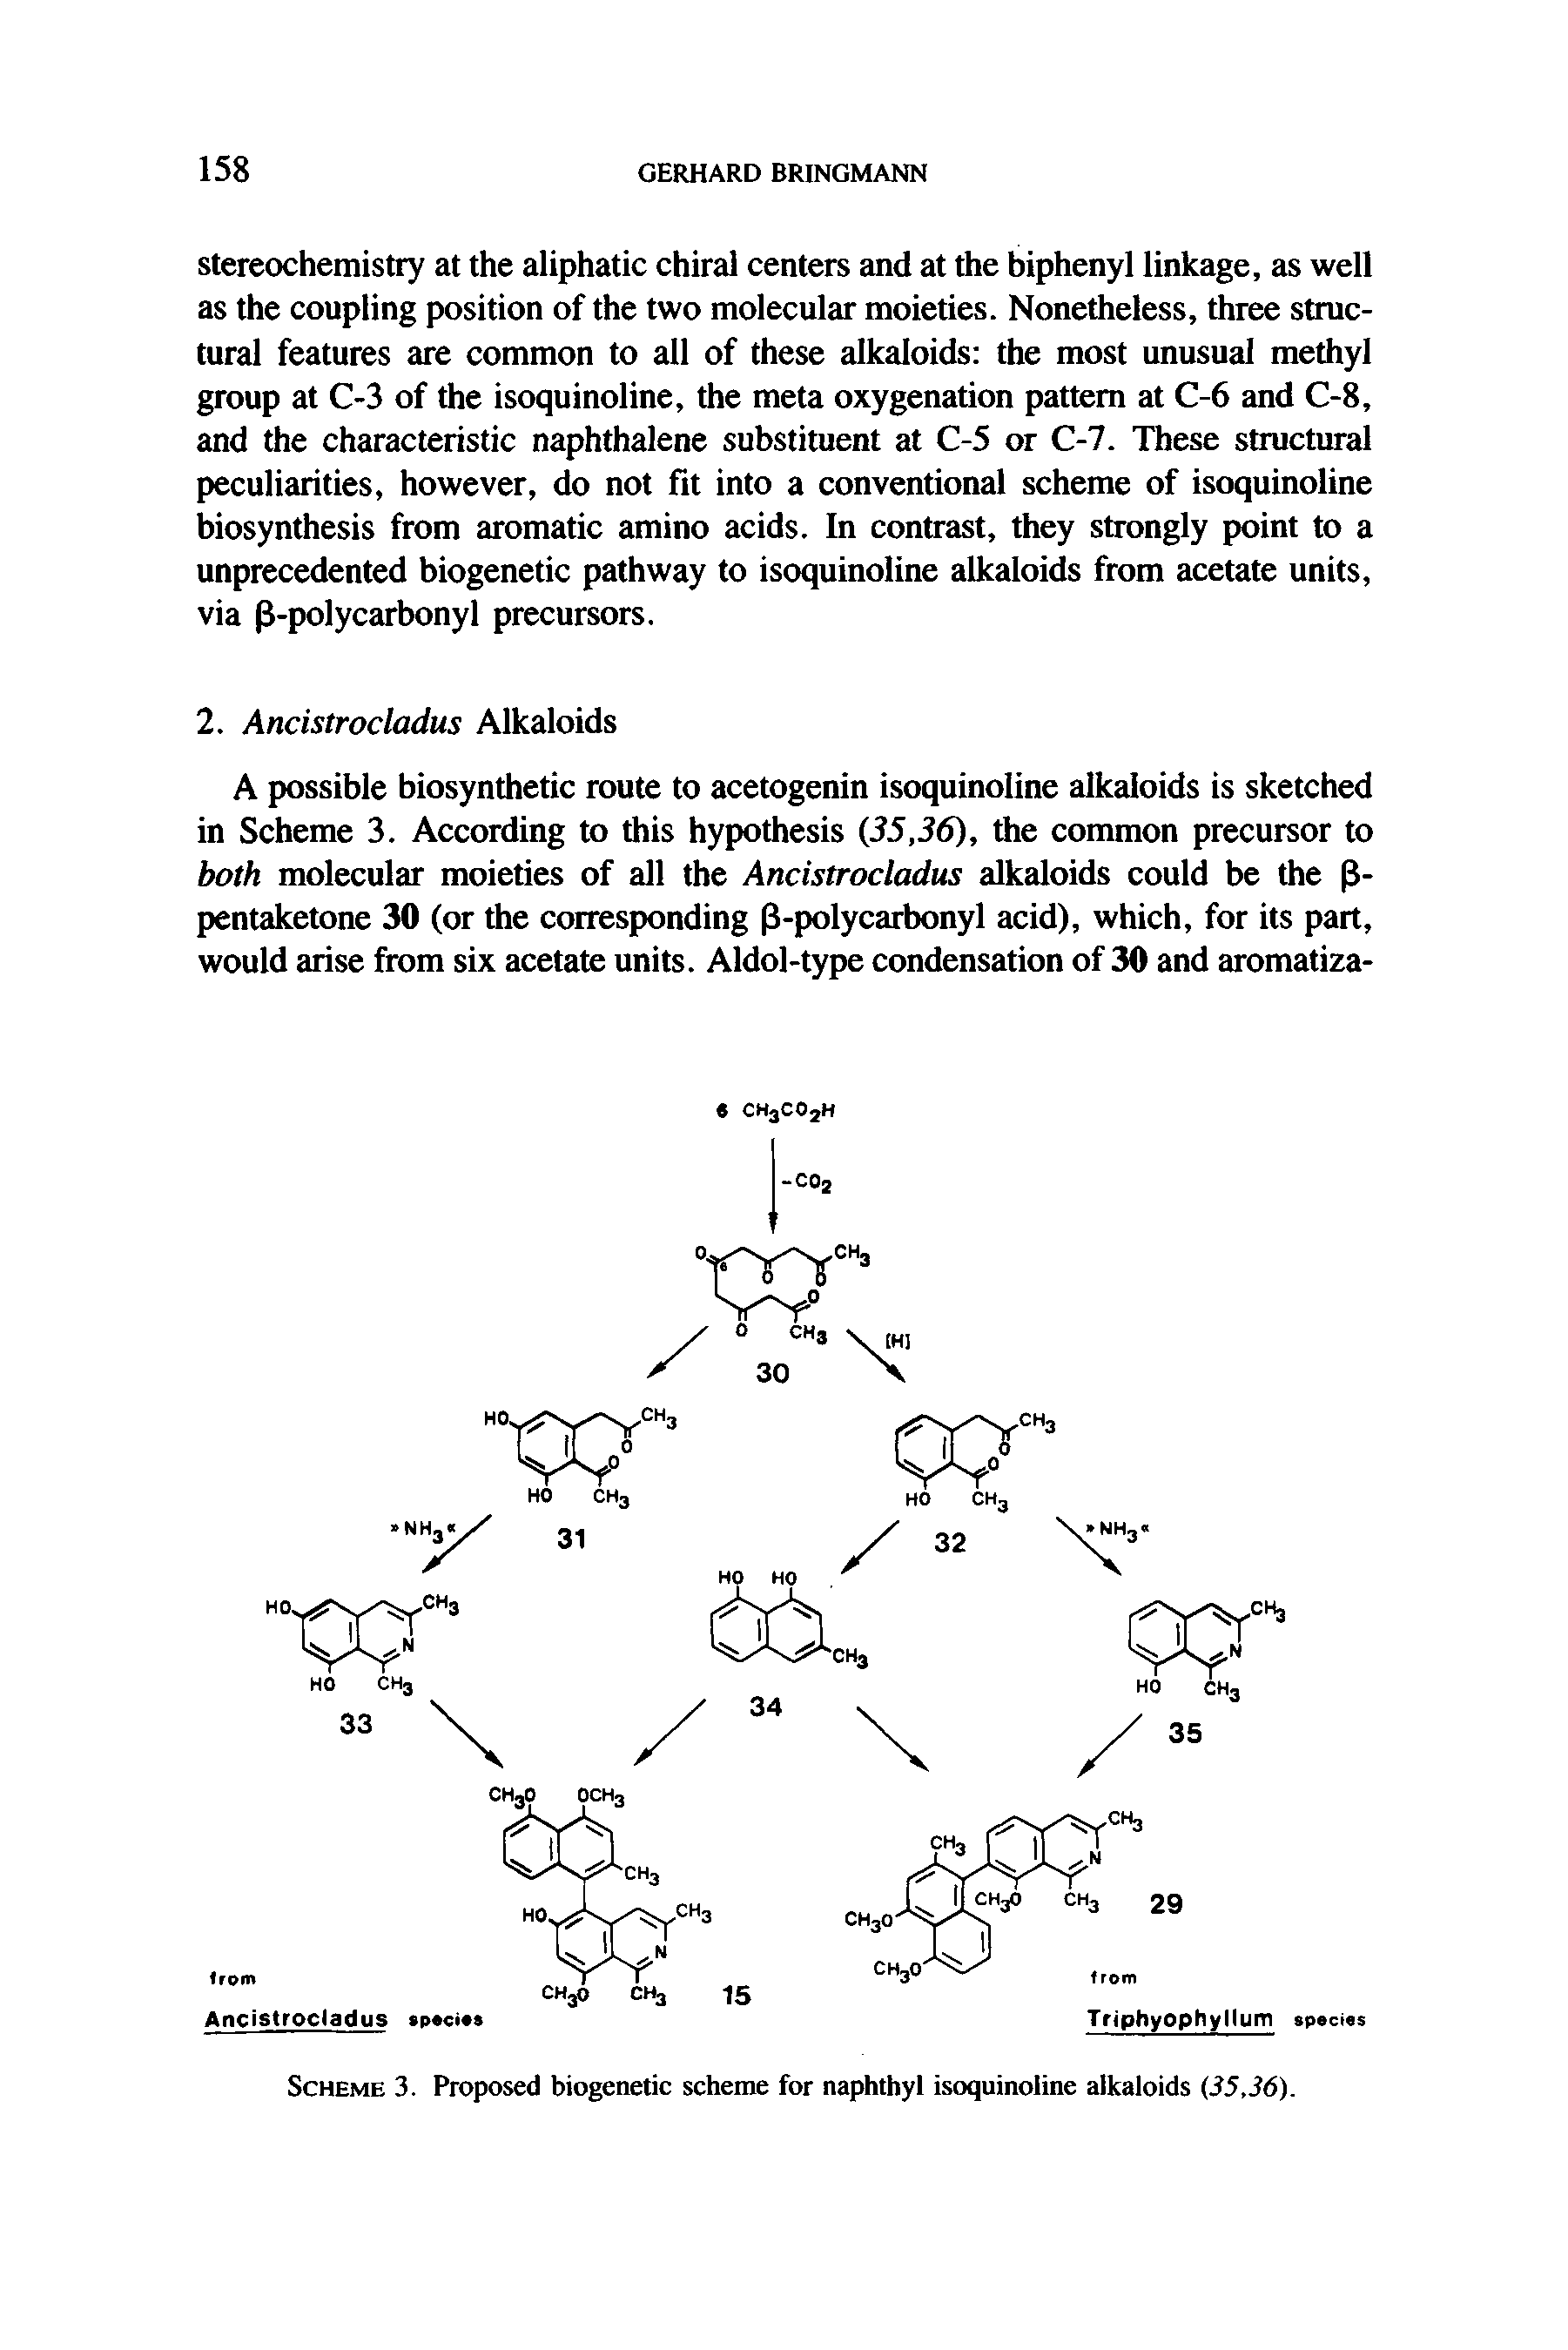 Scheme 3. Proposed biogenetic scheme for naphthyl isoquinoline alkaloids (S5,36).